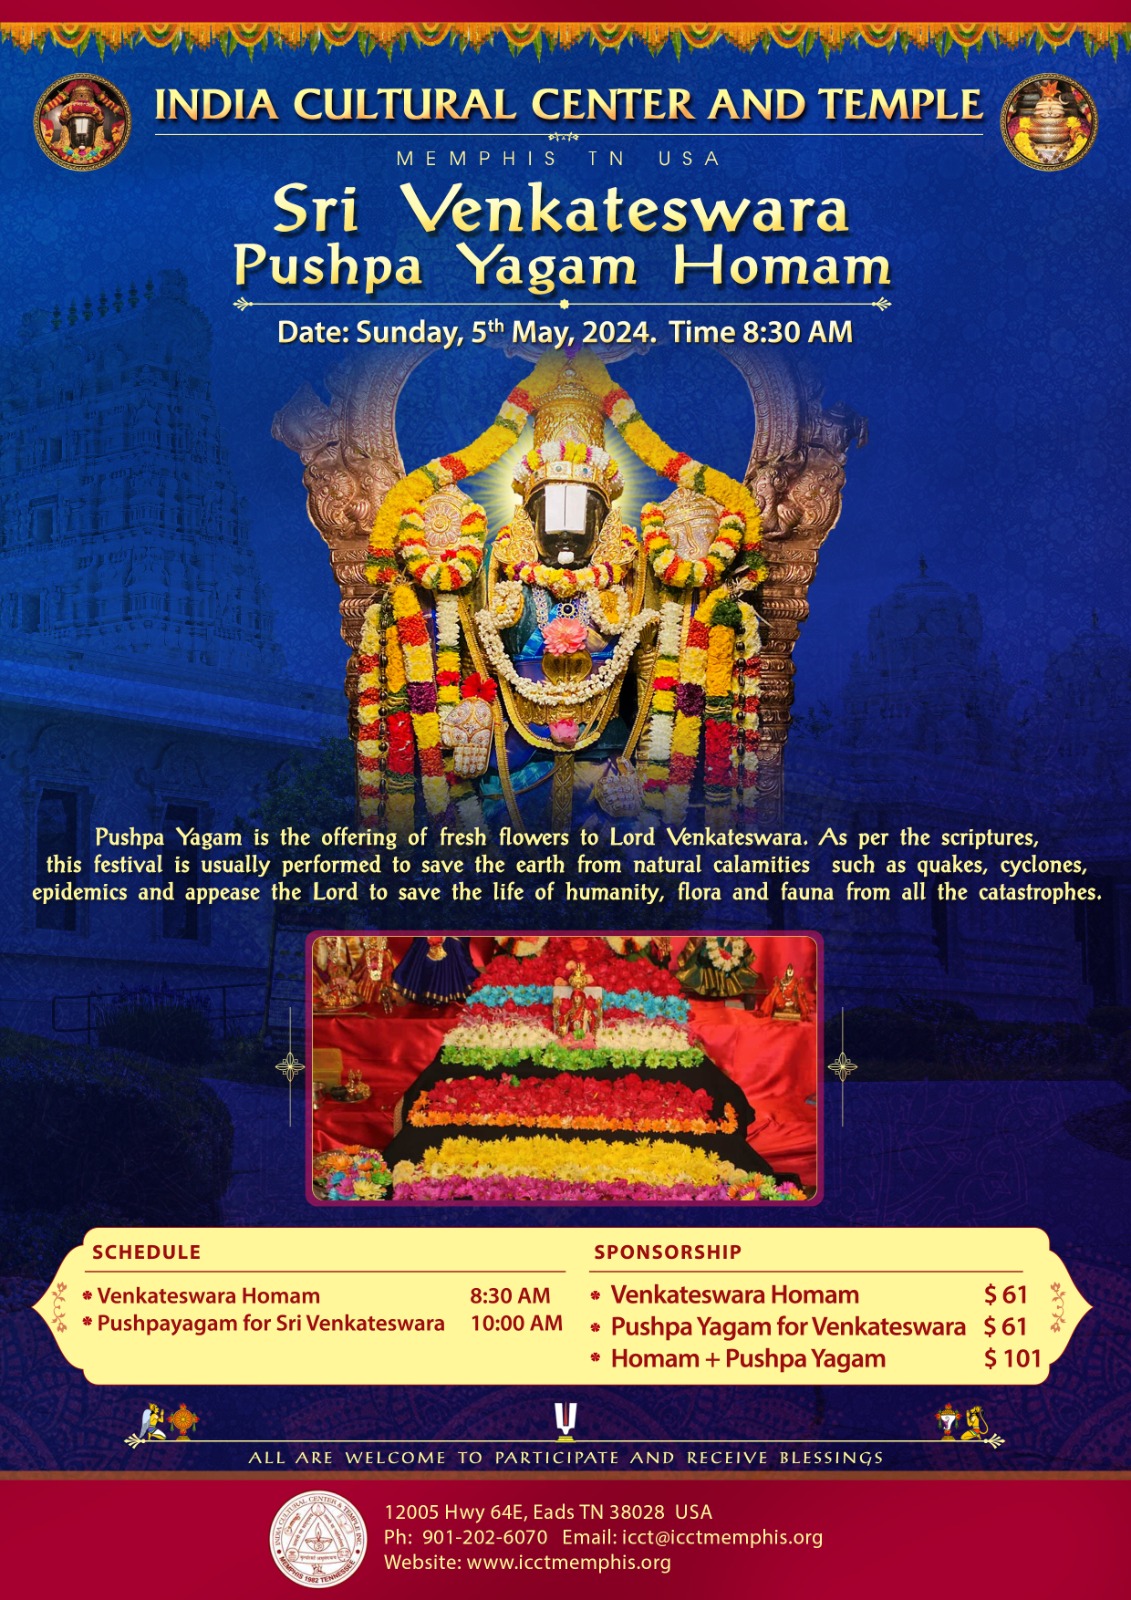 Sri Venkateswara Puspha Yagam Homam